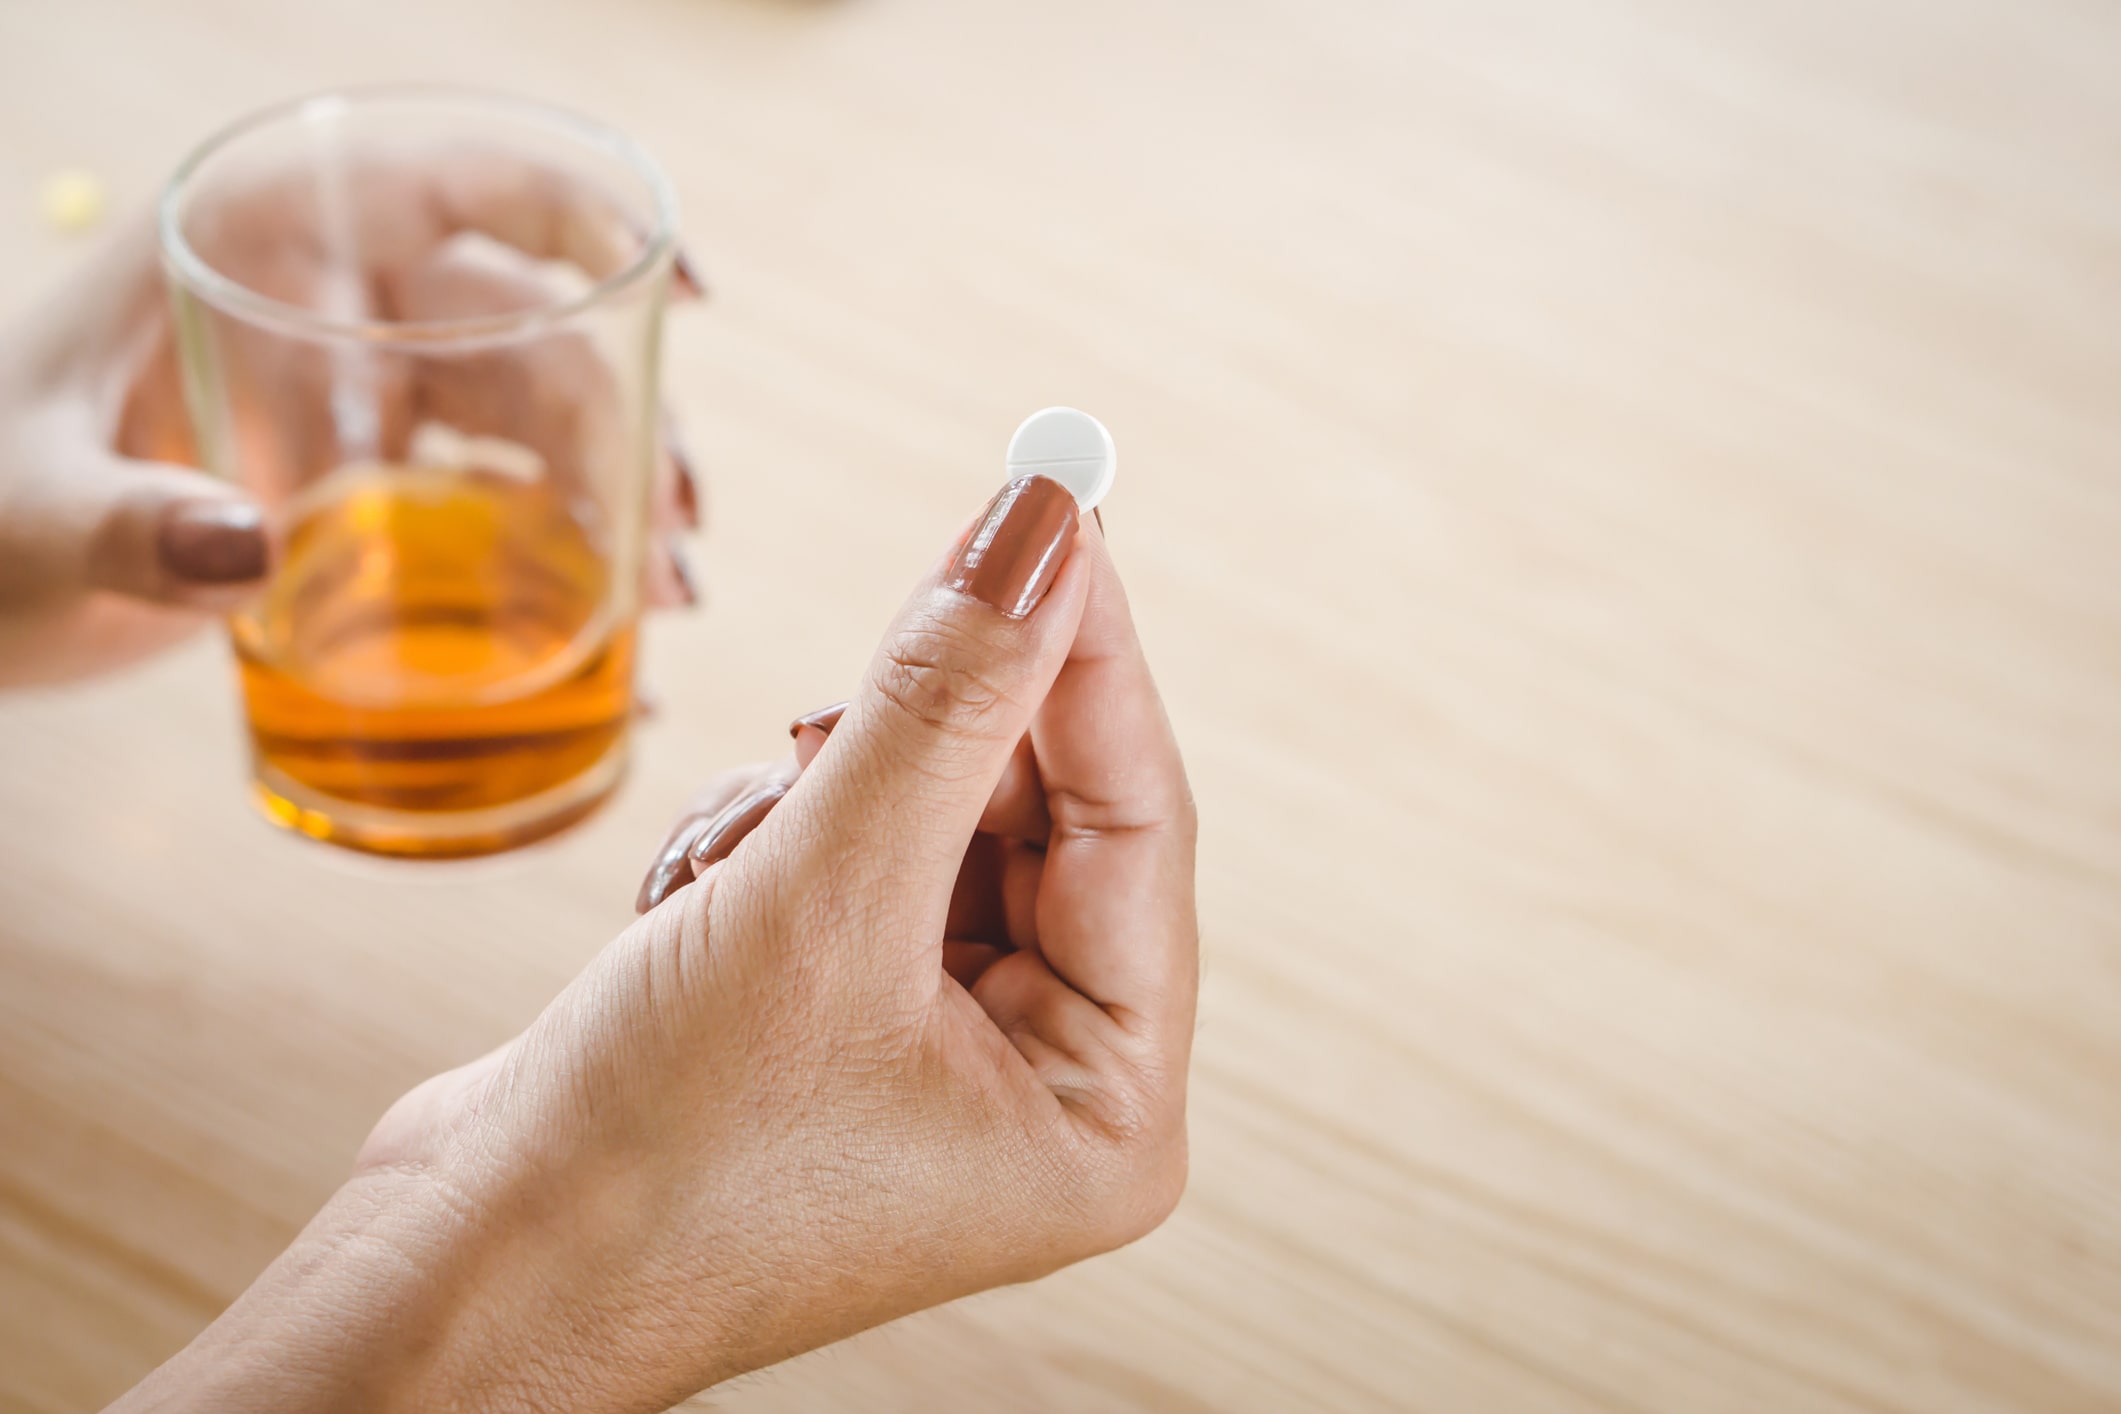 Łączenie alkoholu z lekami